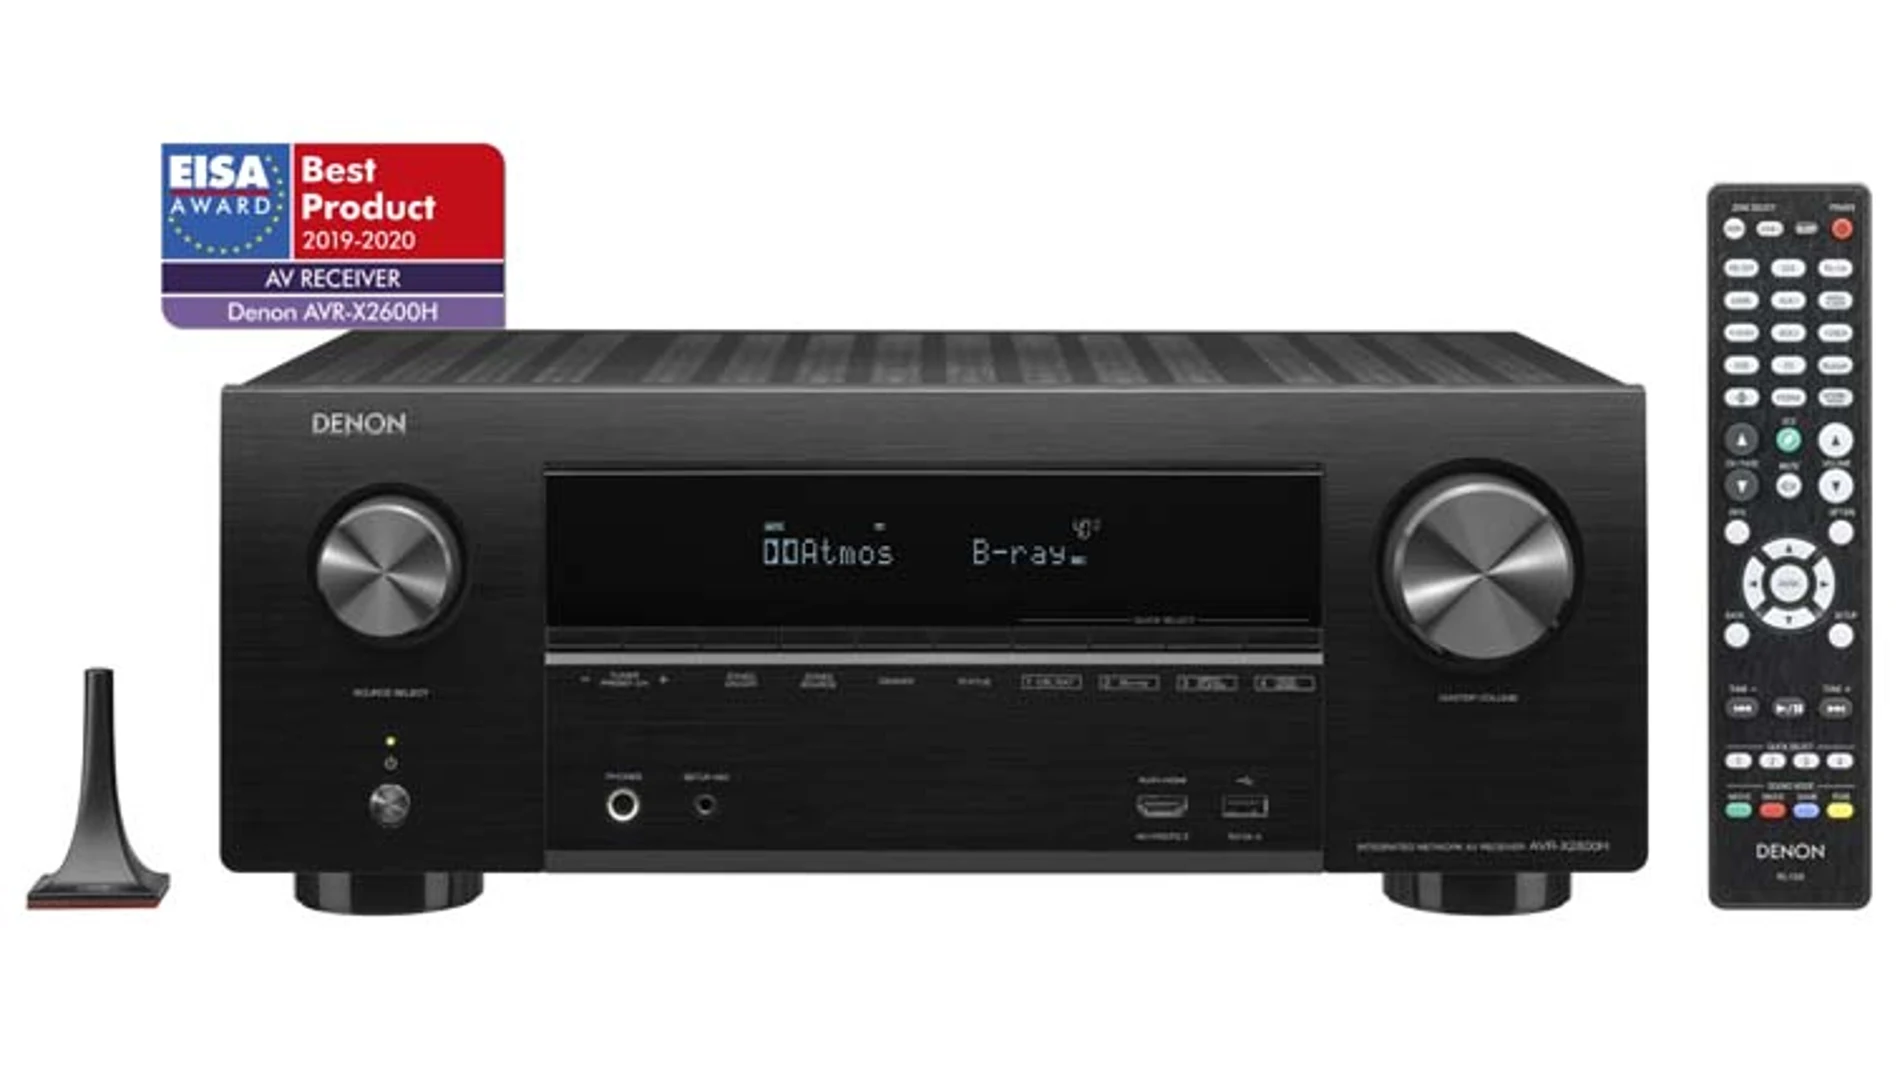 El receptor Denon AVR-2600H tiene 7.2 canales, reproduce vídeo 4K Ultra HD y cuenta con Dolby Atmos para lograr un sonido envolvente de calidad.